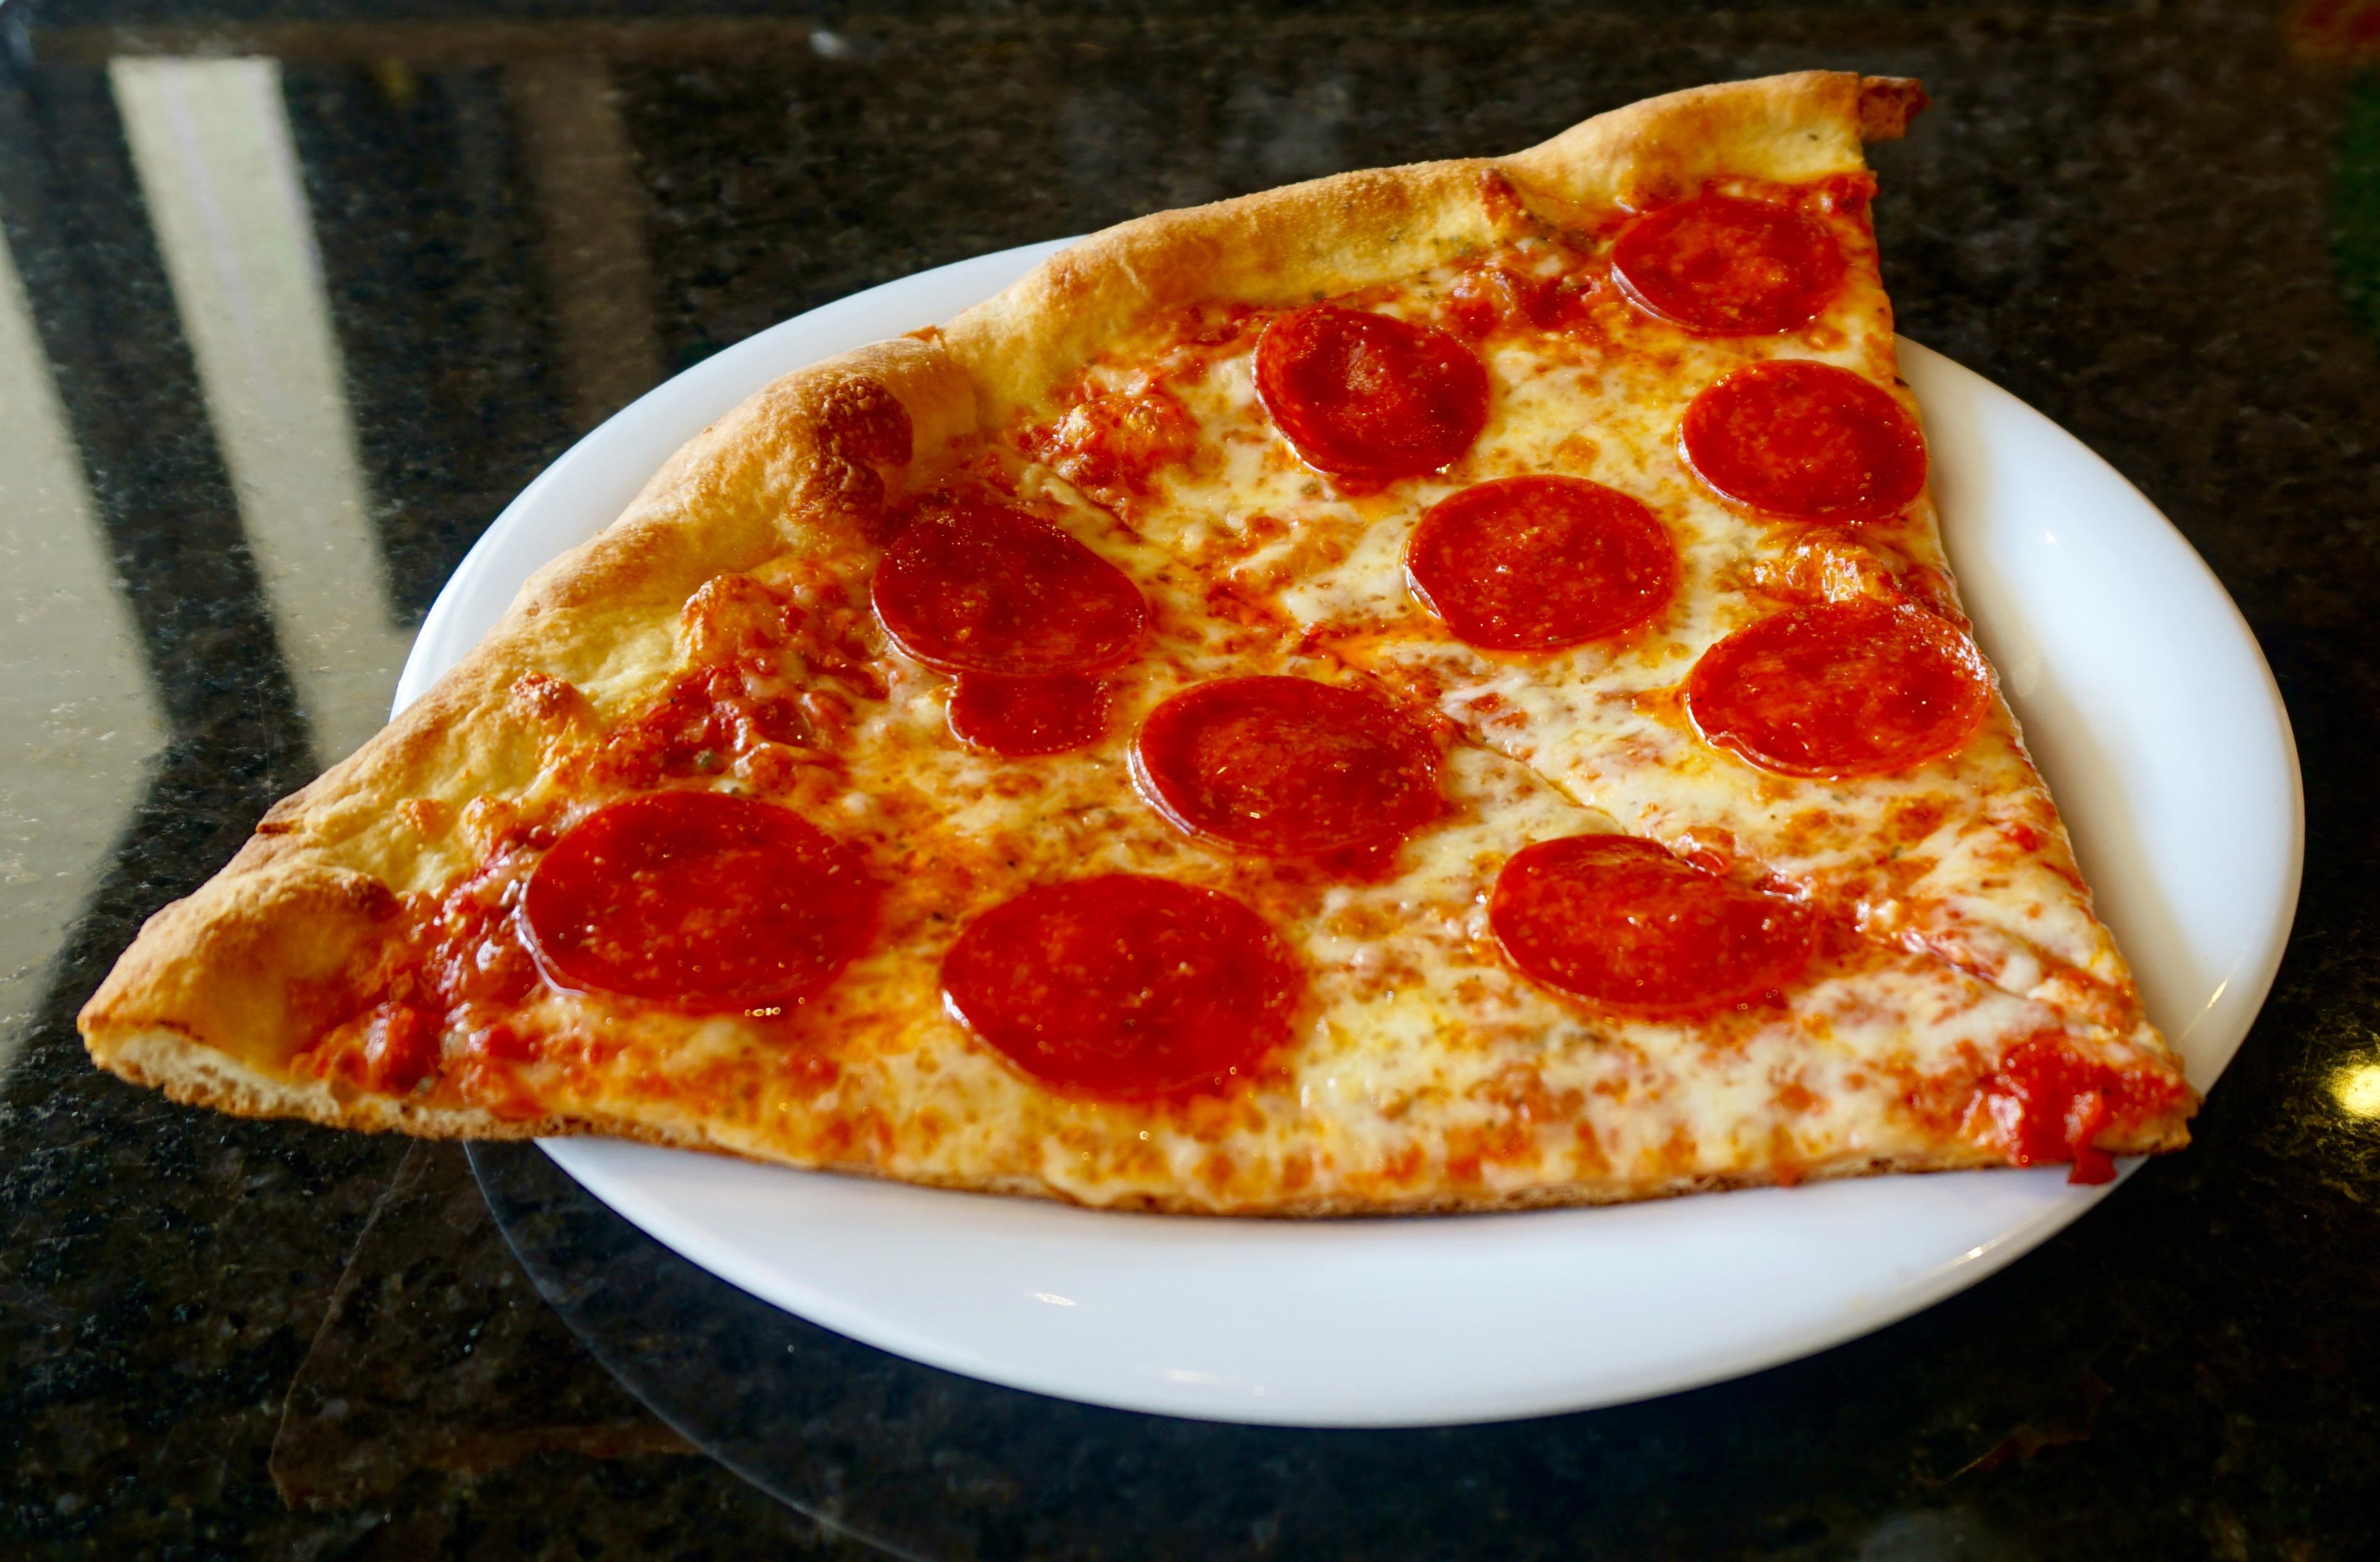 Gianni's NY Pizza Photo